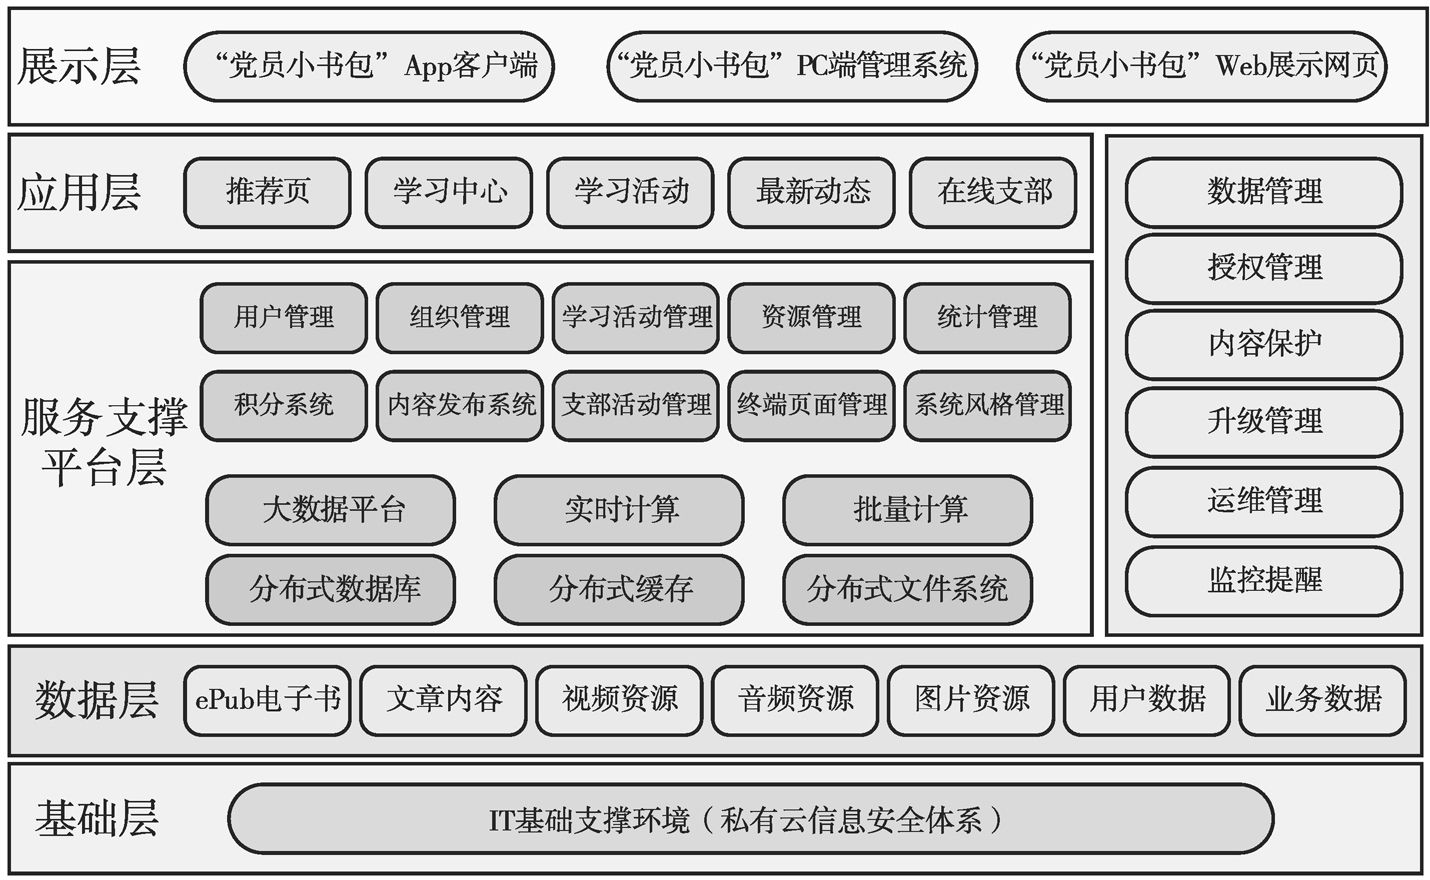 图8-6 “党员小书包”技术架构